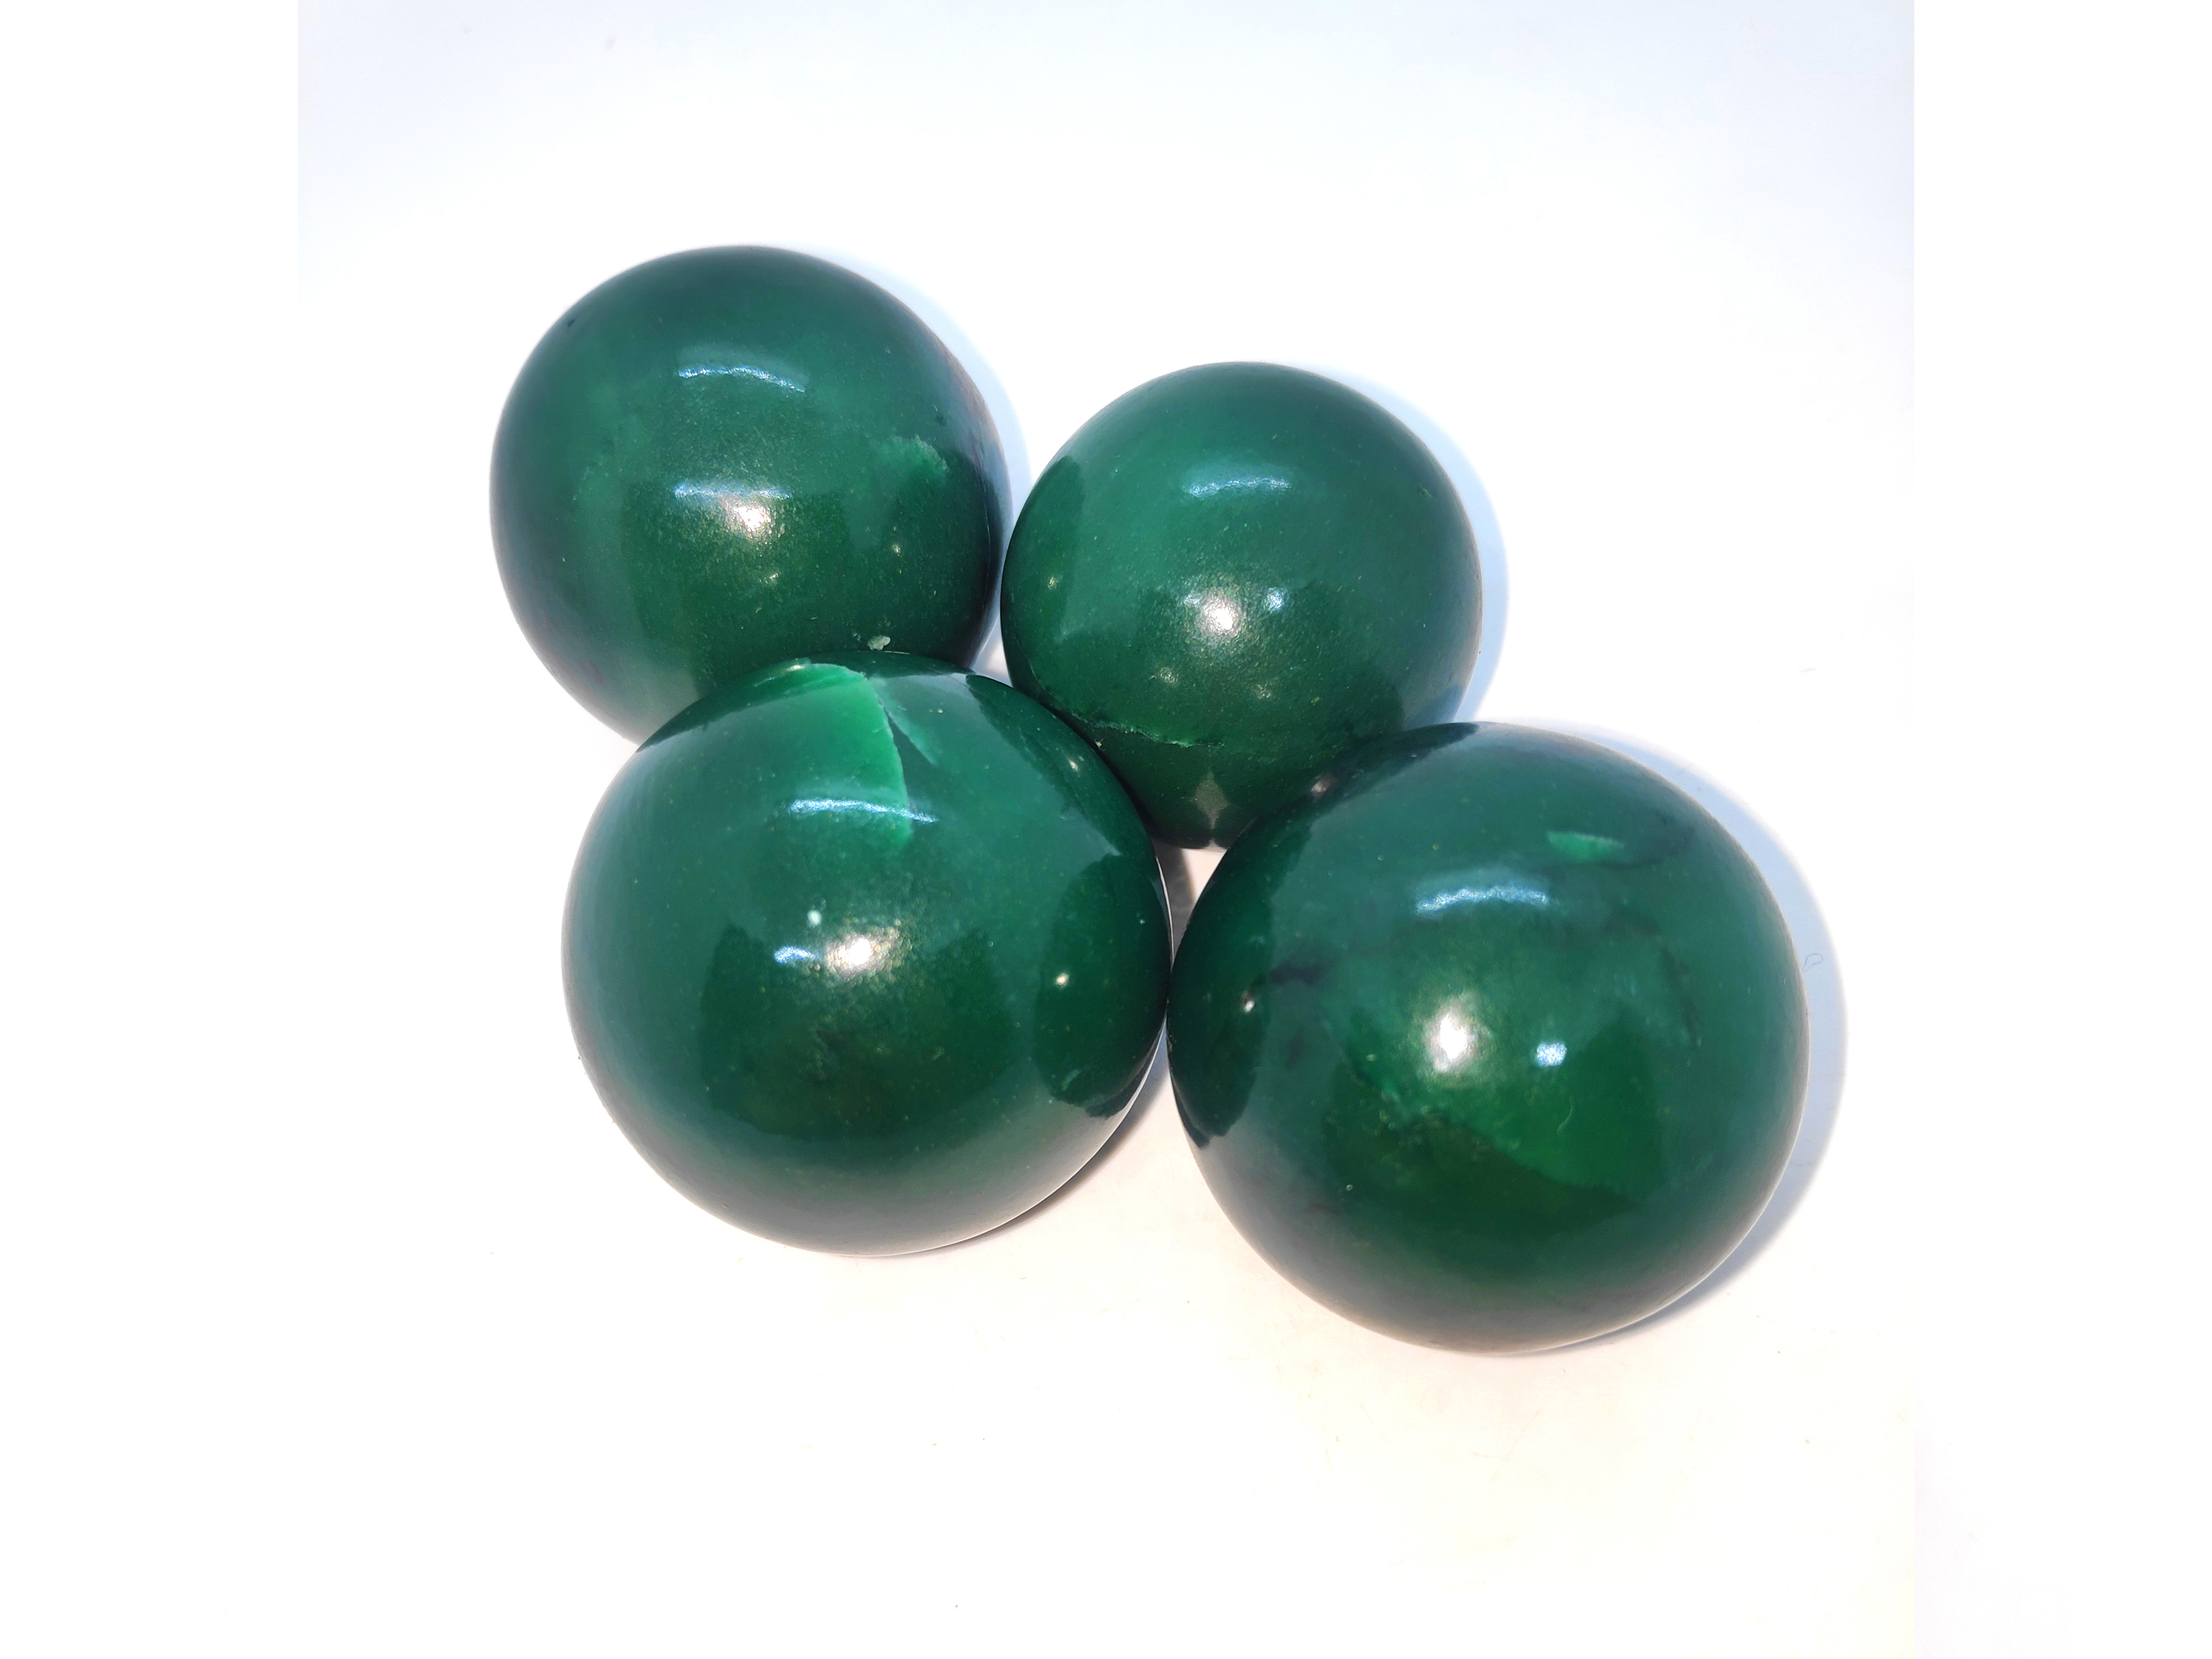 Green Avaenturine Spheres Gemstones